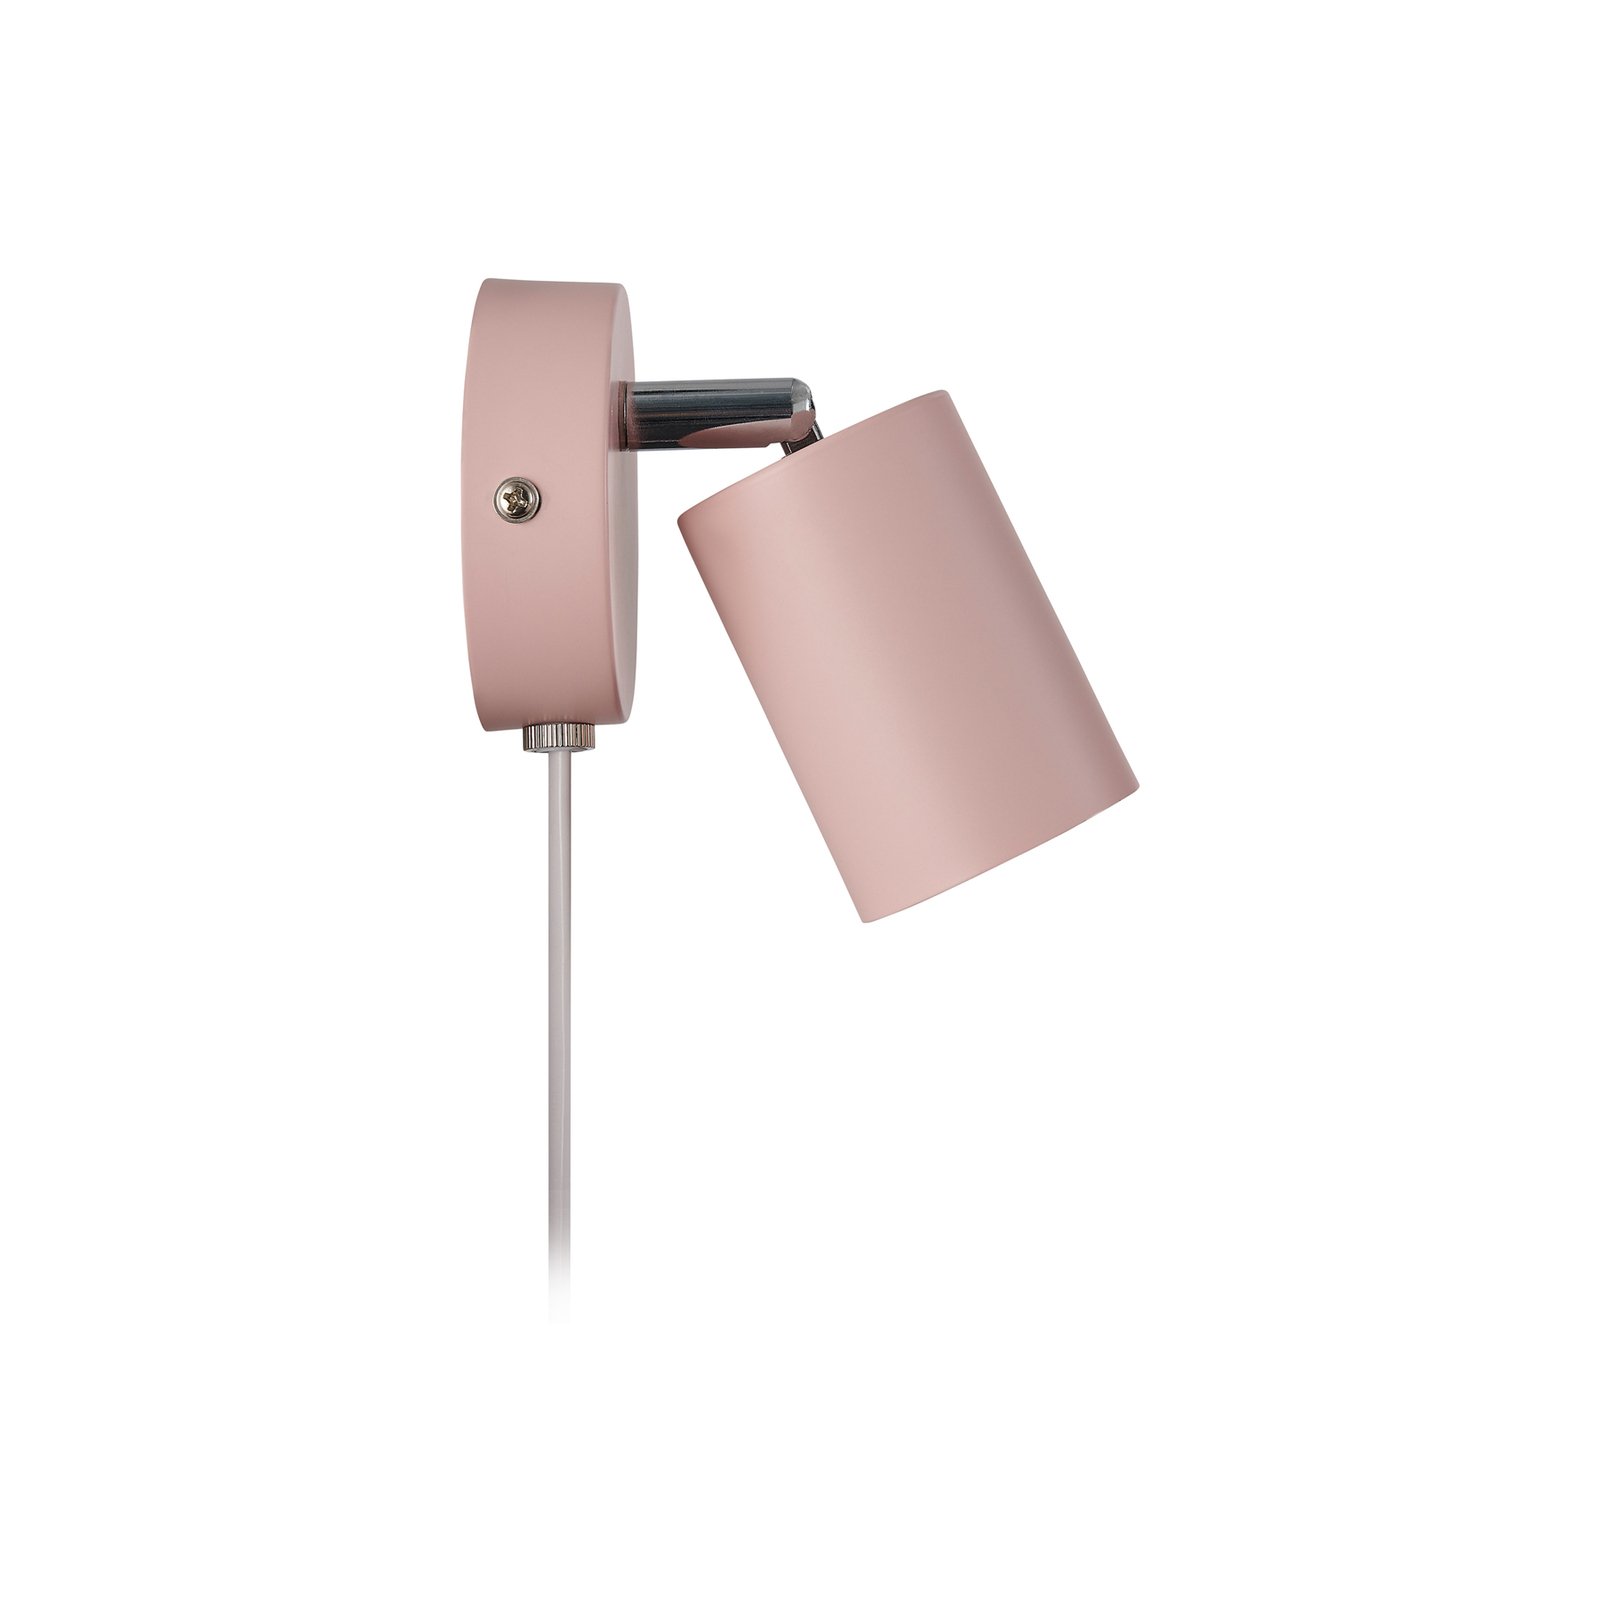 Nástěnné bodové svítidlo Explore s kabelem a zástrčkou, GU10, růžová barva